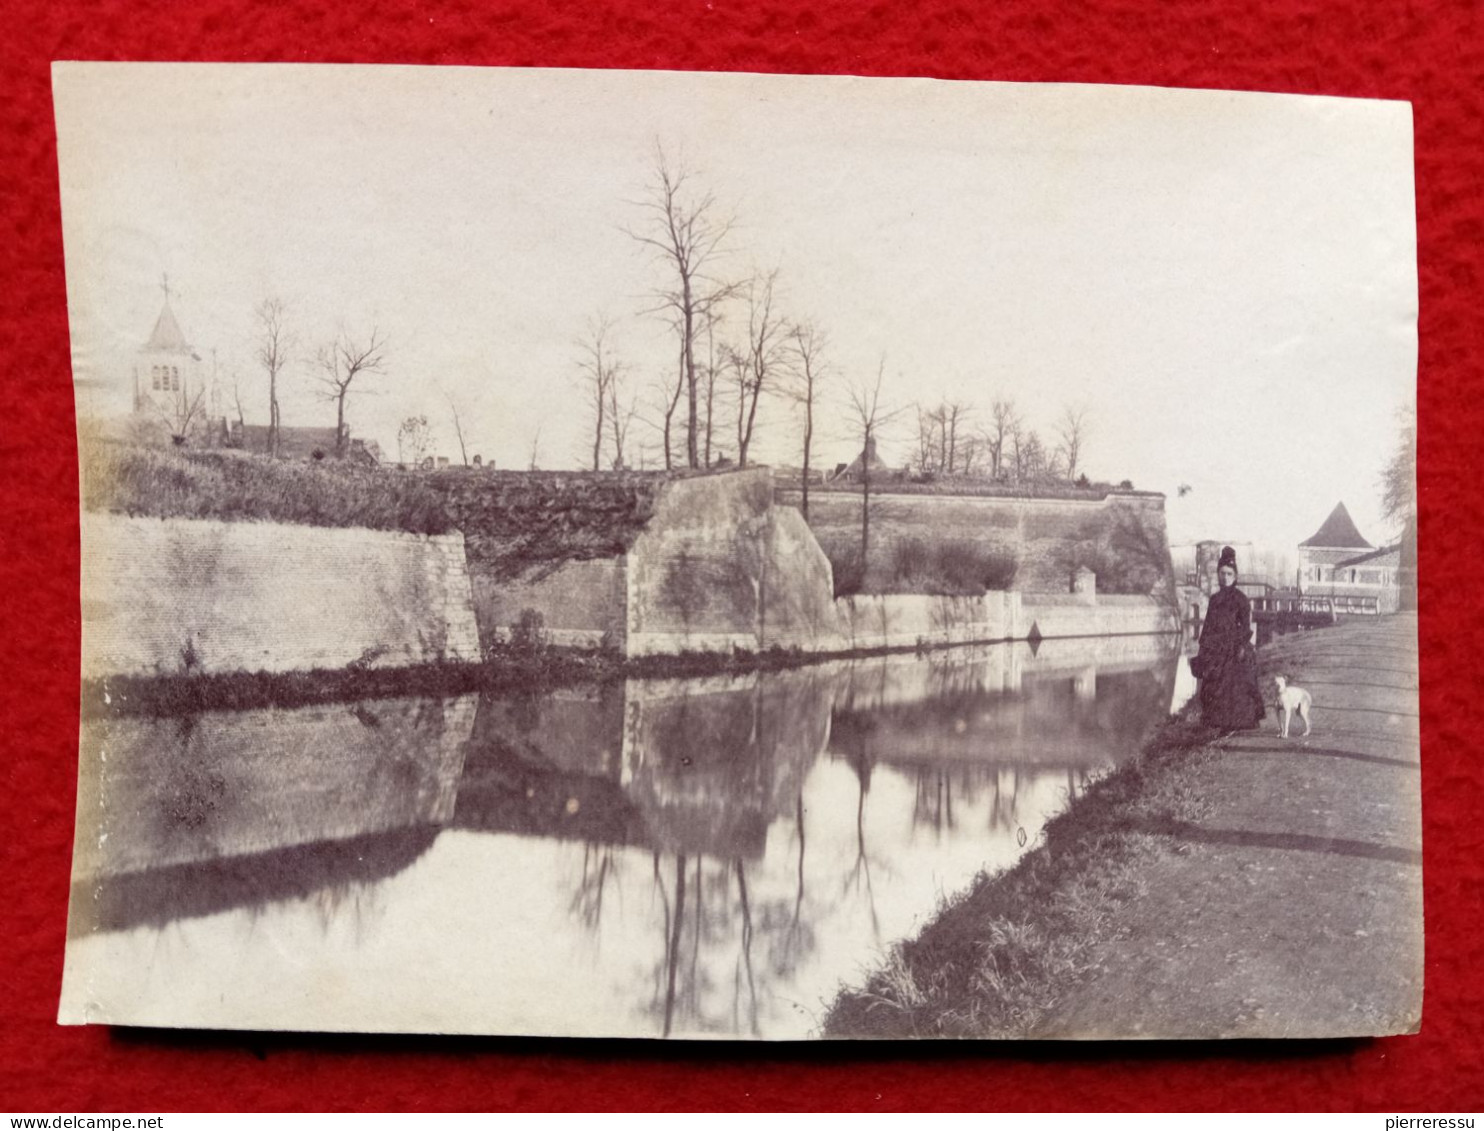 BOUCHAIN CANAL 1894 PHOTO 17 X 11.8 Cm - Places